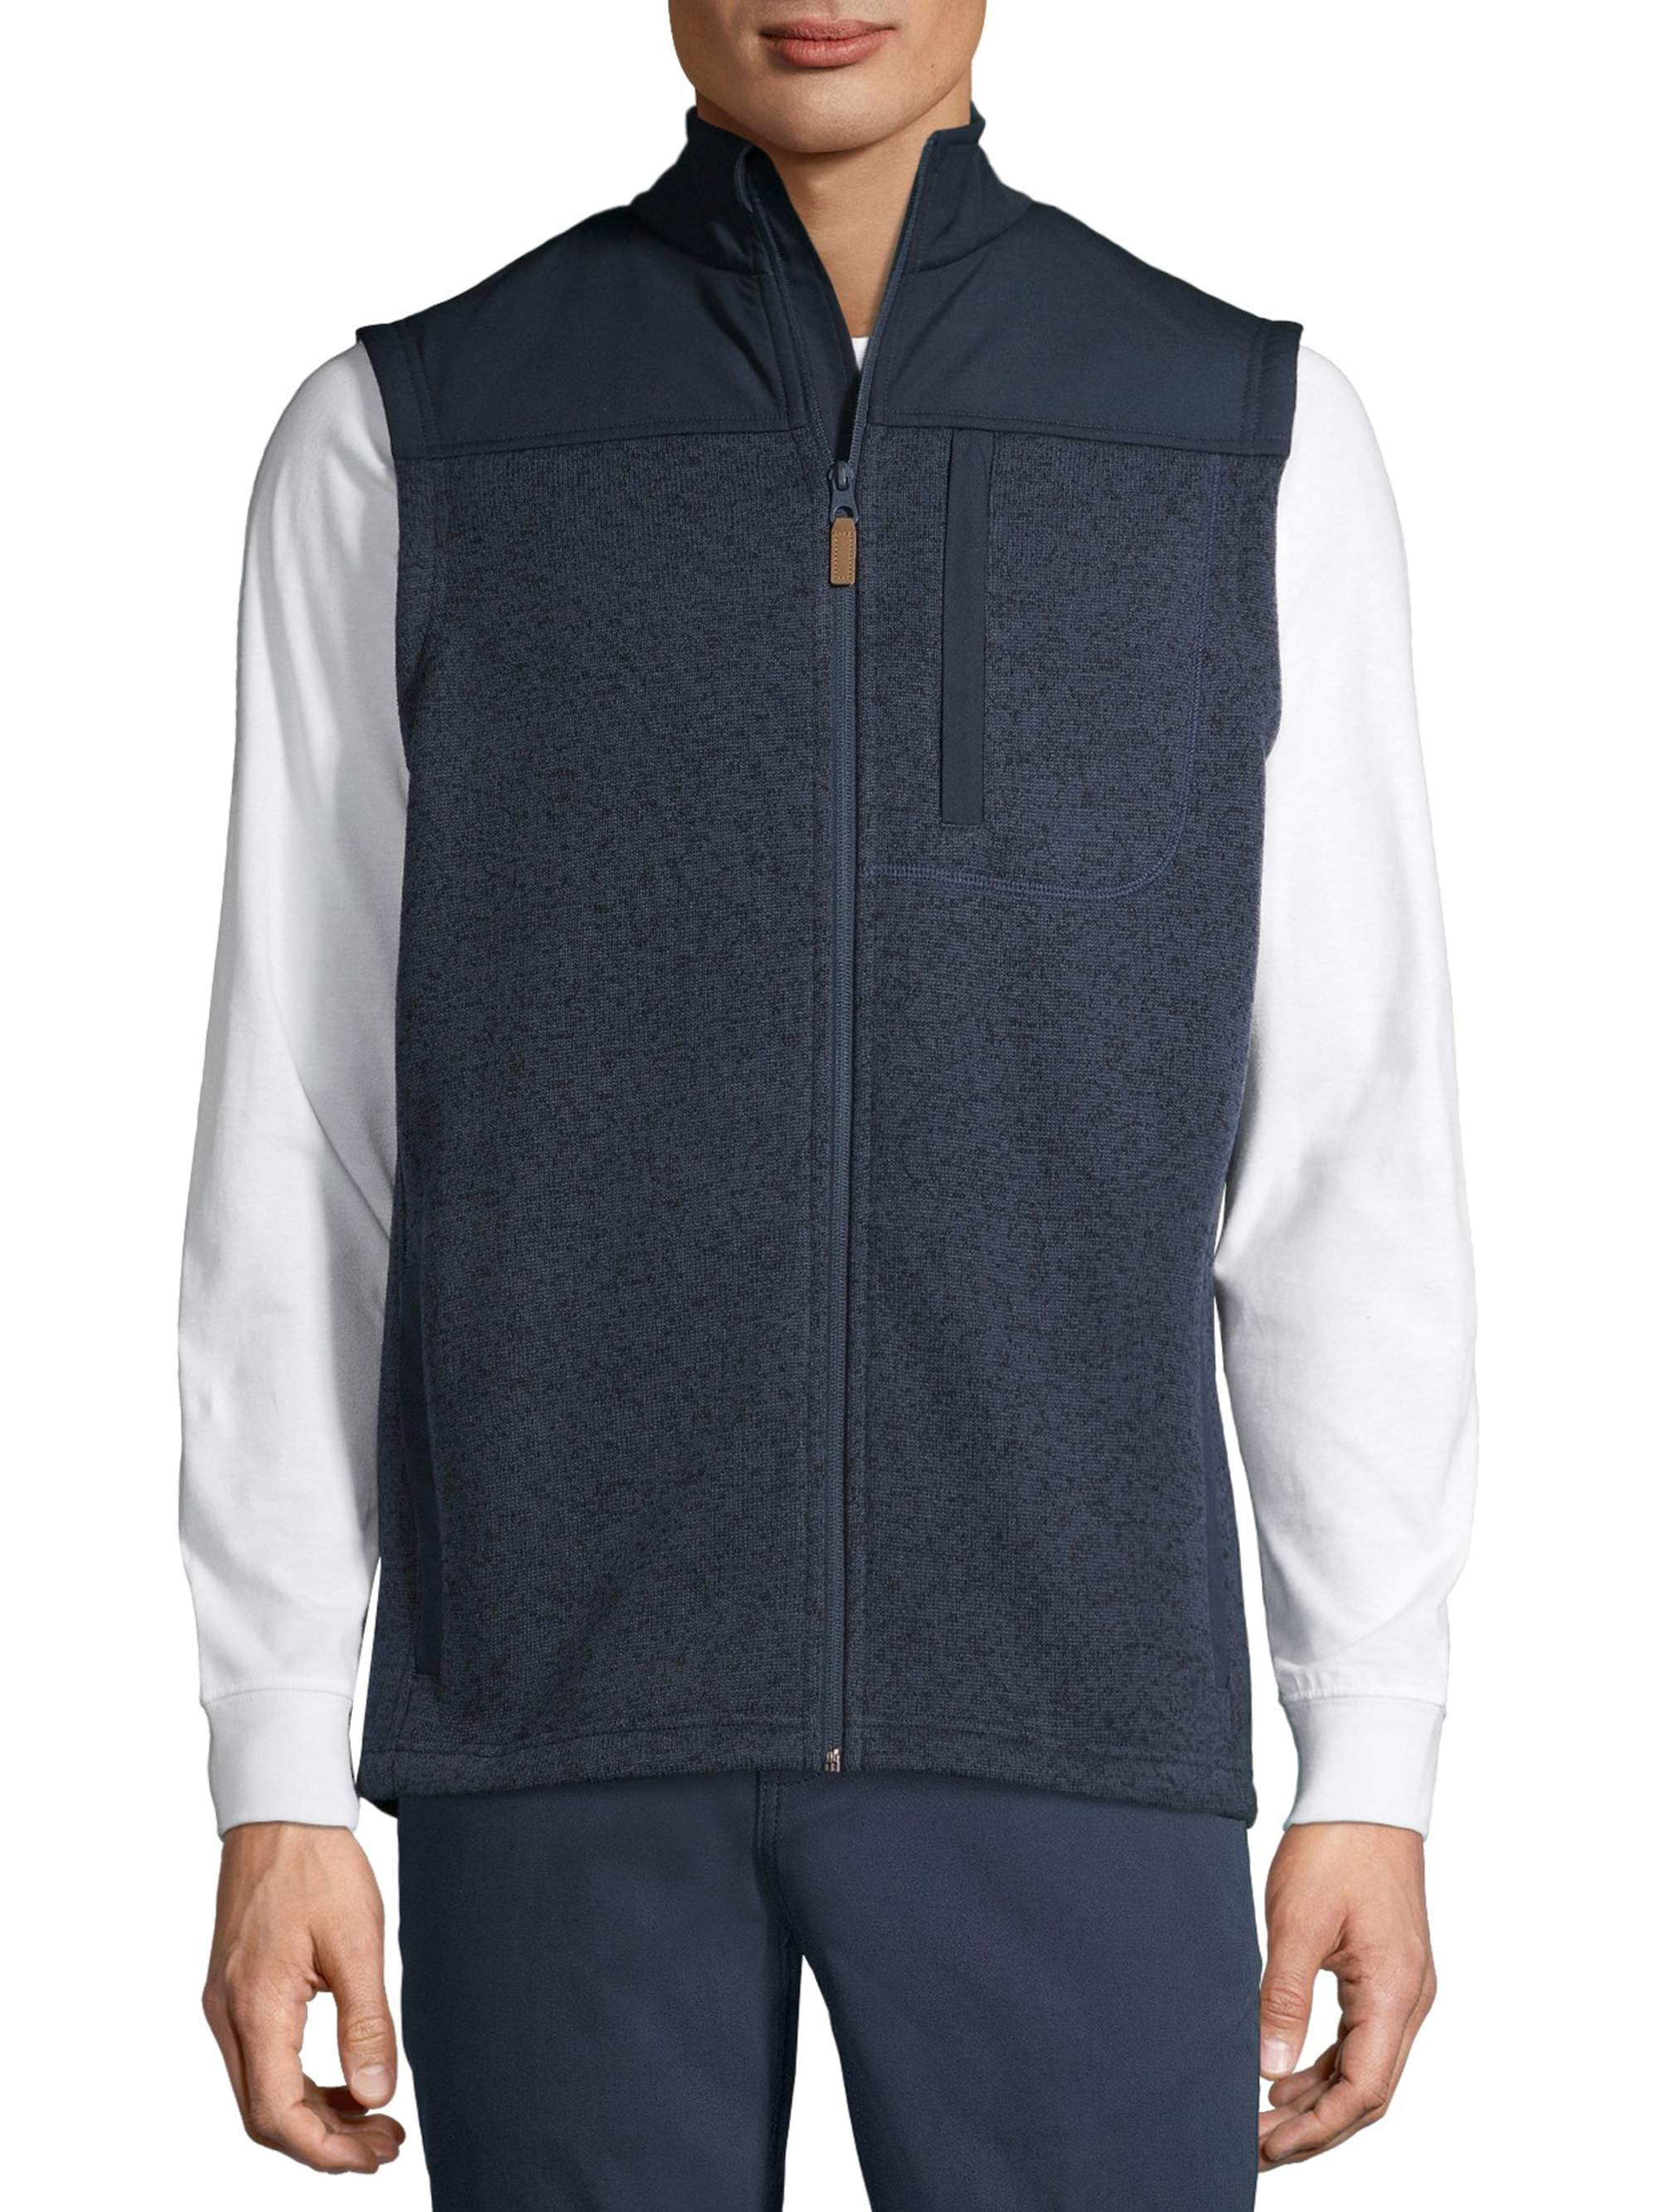 Mens Fleece Vest Full Zip Outdoor Windproof Water-Resistant Active Sleeveless Vest with 4 Pockets 